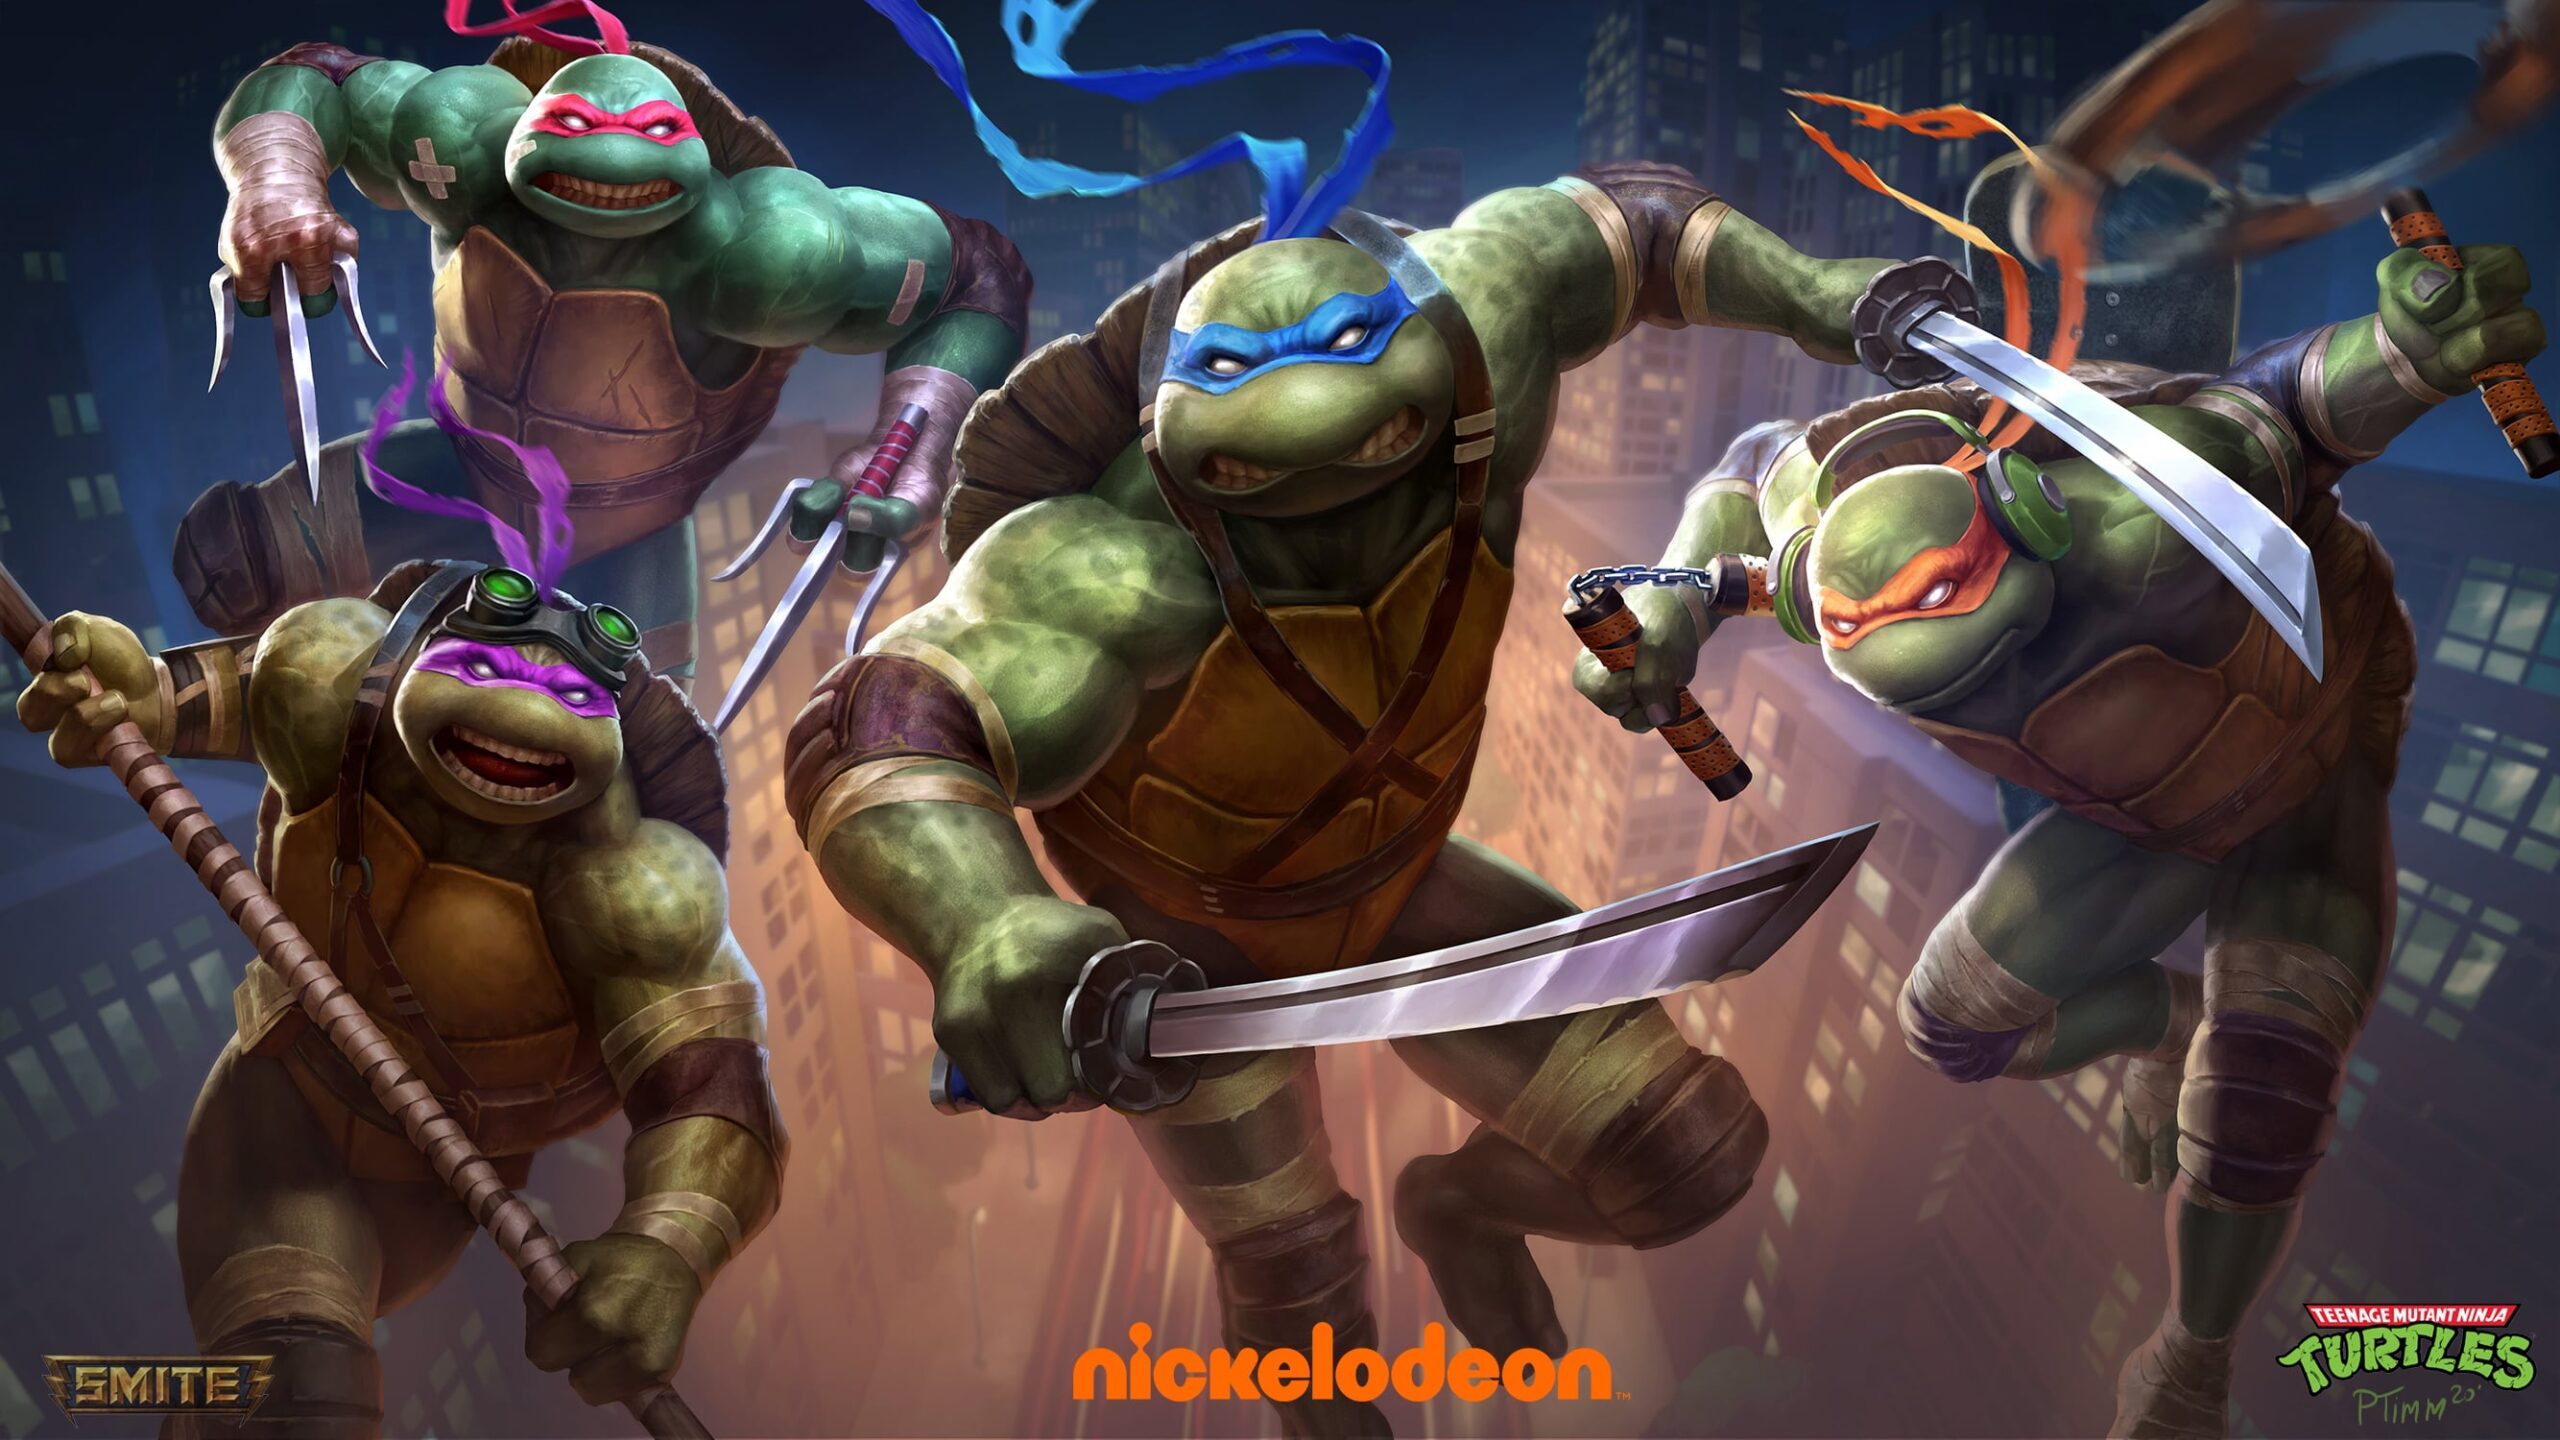 Are Ninja Turtles Superheroes